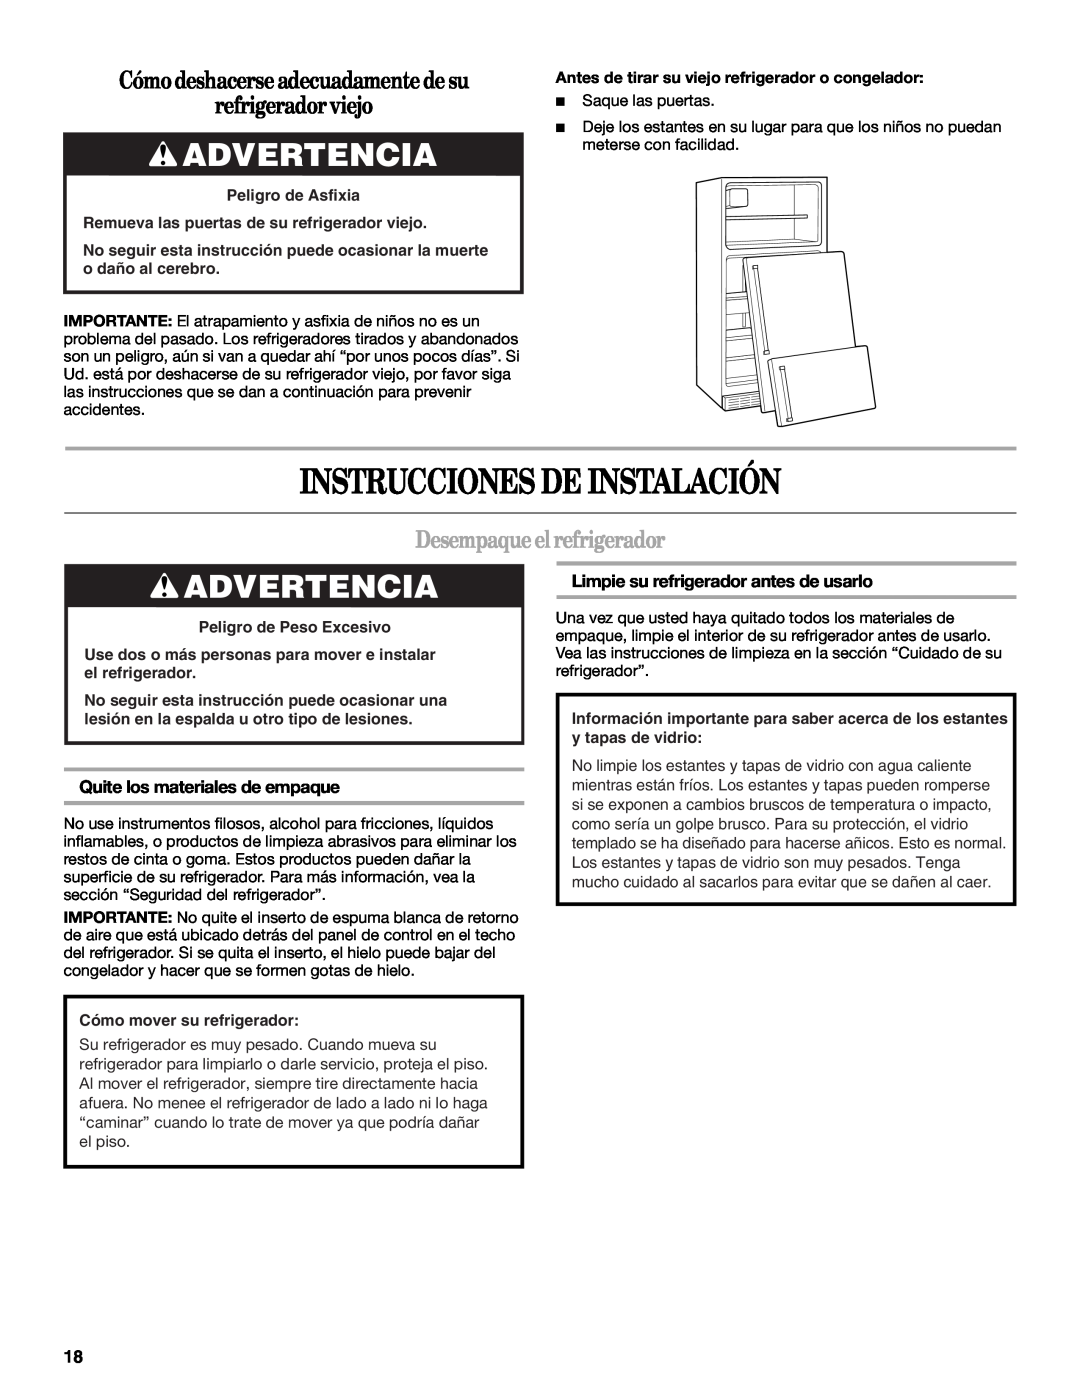 Whirlpool GR2FHTXV Instrucciones De Instalación, Advertencia, Cómo deshacerse adecuadamente de su refrigerador viejo 